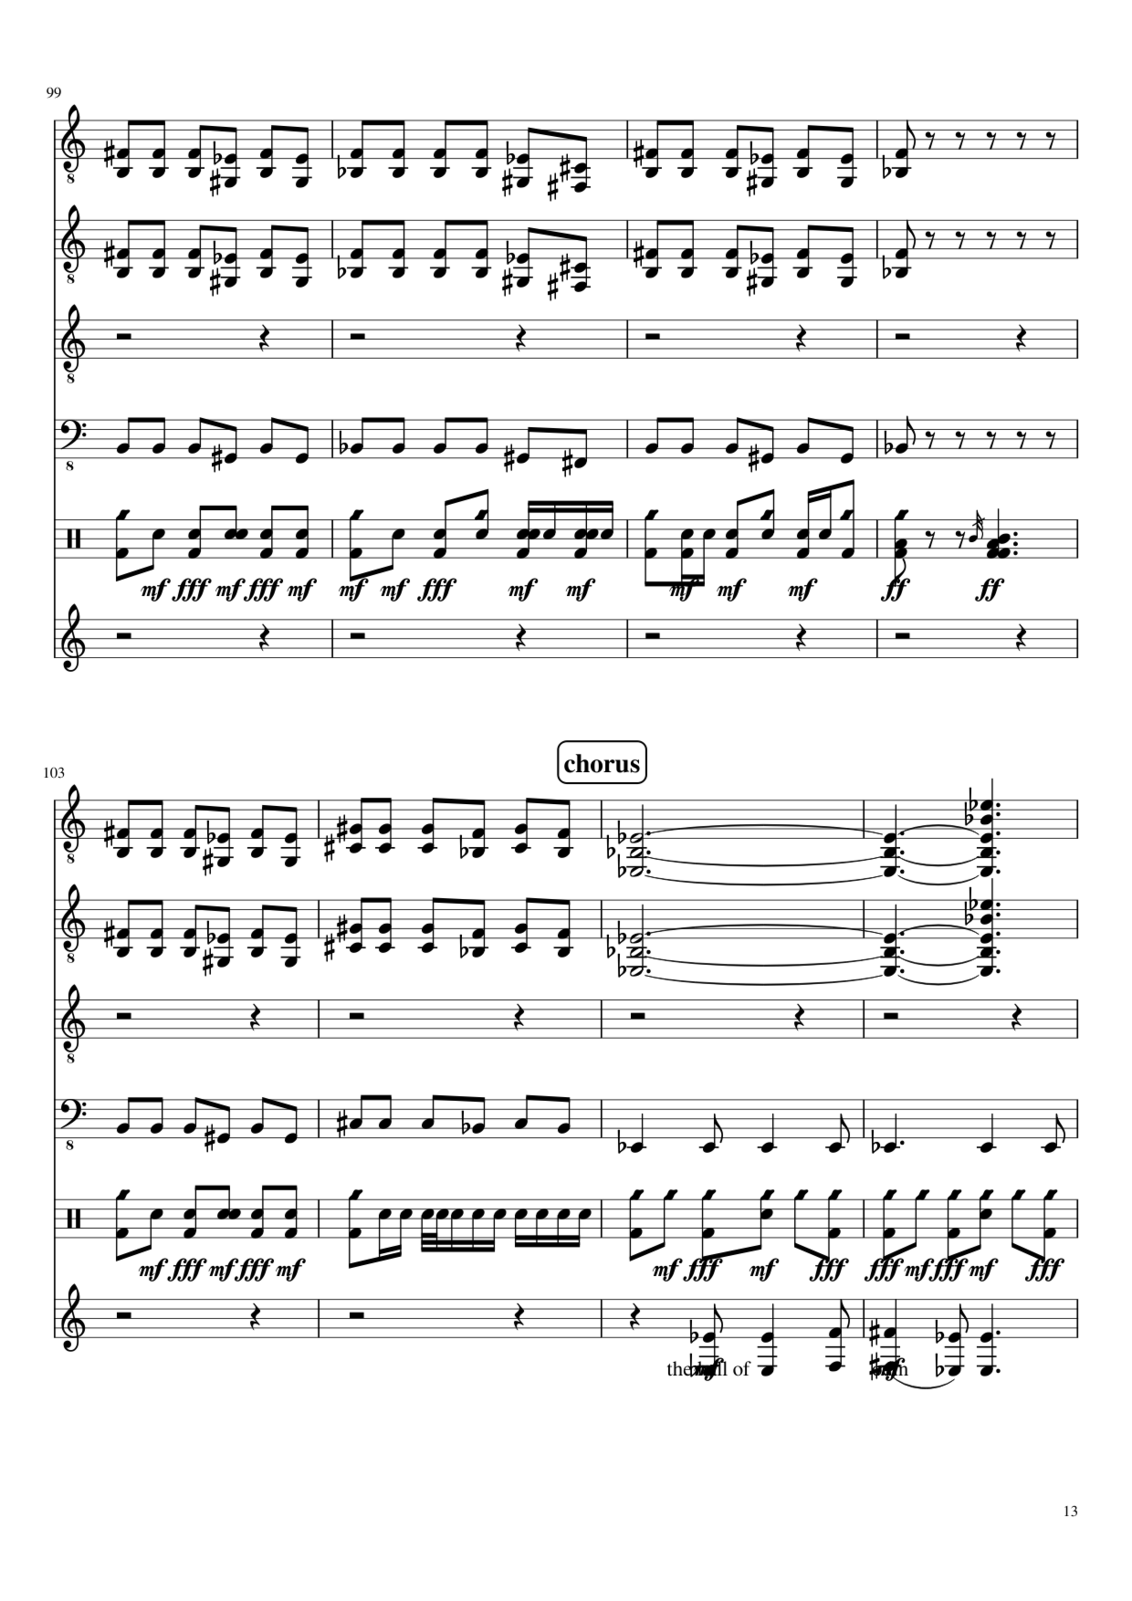 Prervannaya lyubov ili arbuznaya korka slide, Image 2